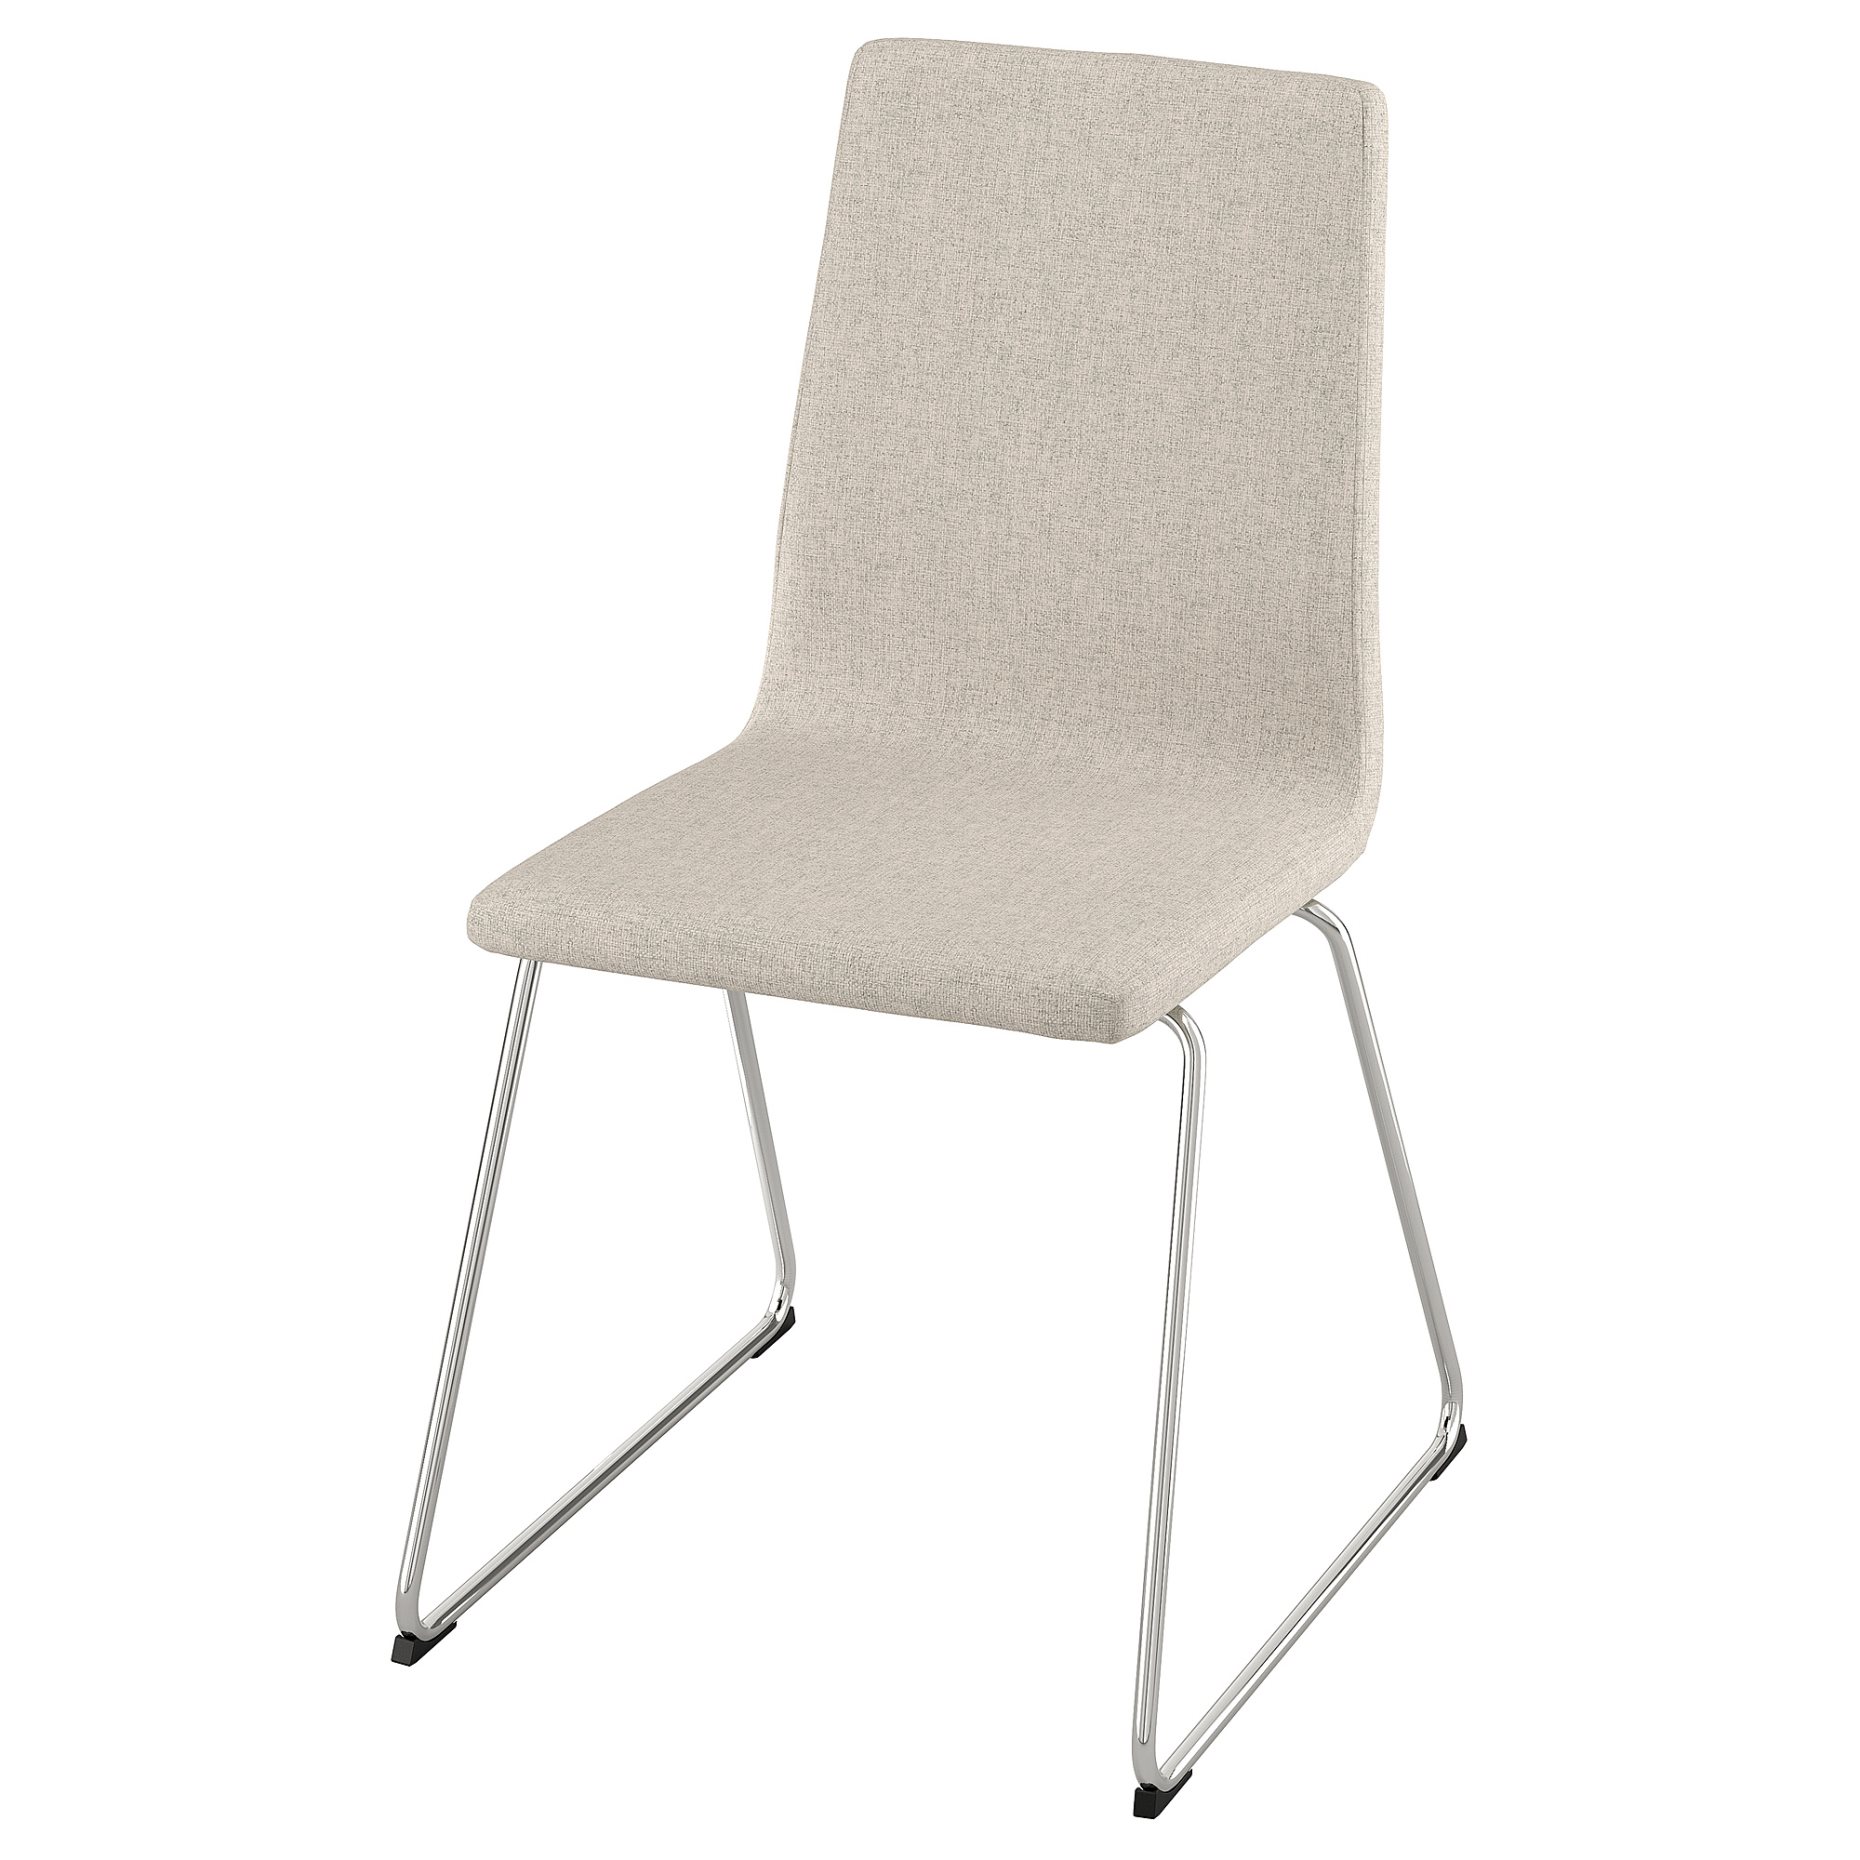 LILLÅNÄS, chair, 005.347.57